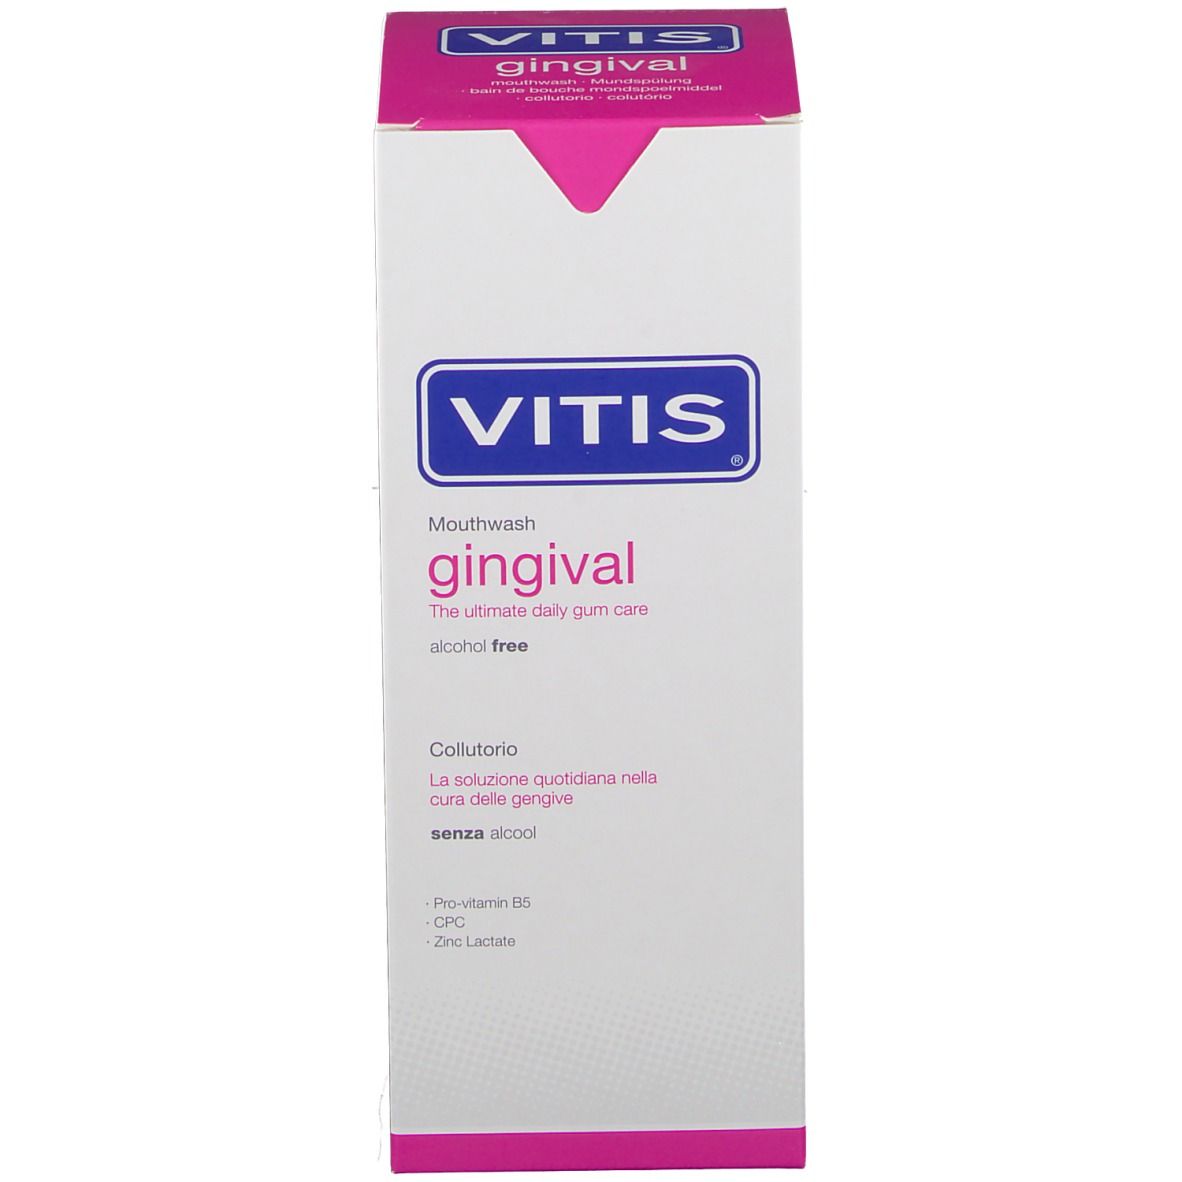 VITIS® gingival Mundspülung